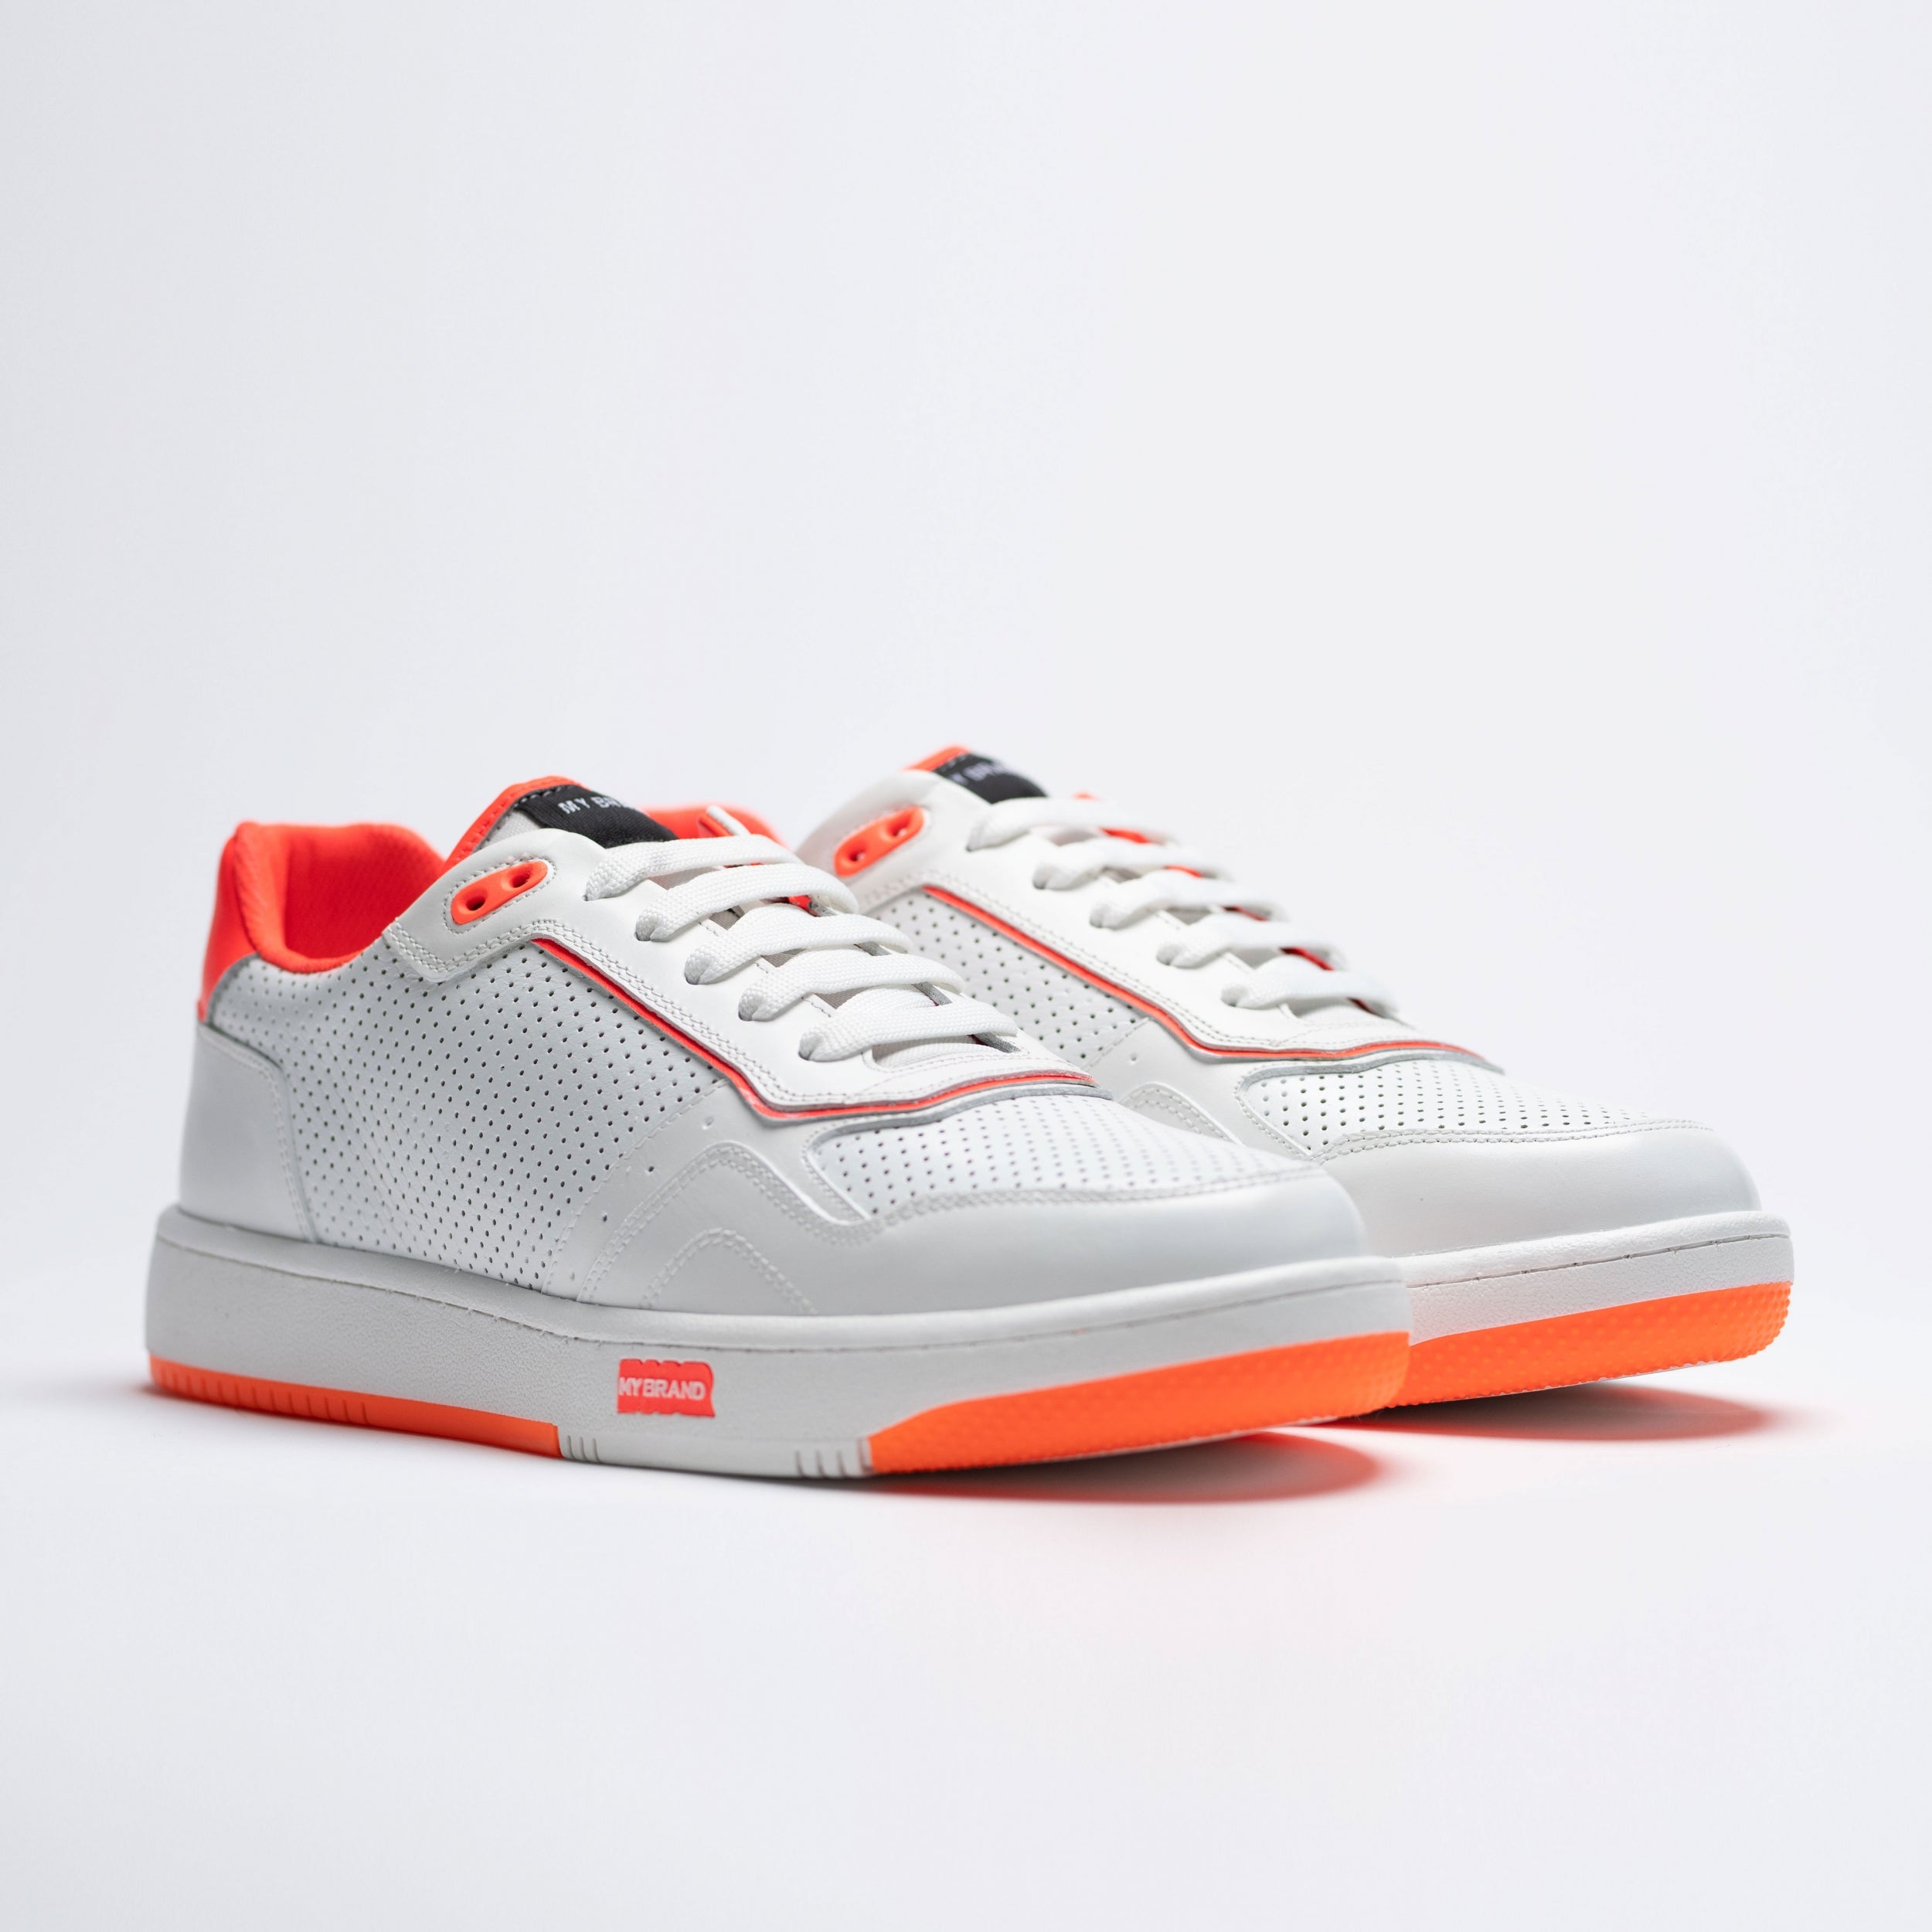 Tennis Shoe Neon Orange | NEON ORANGE